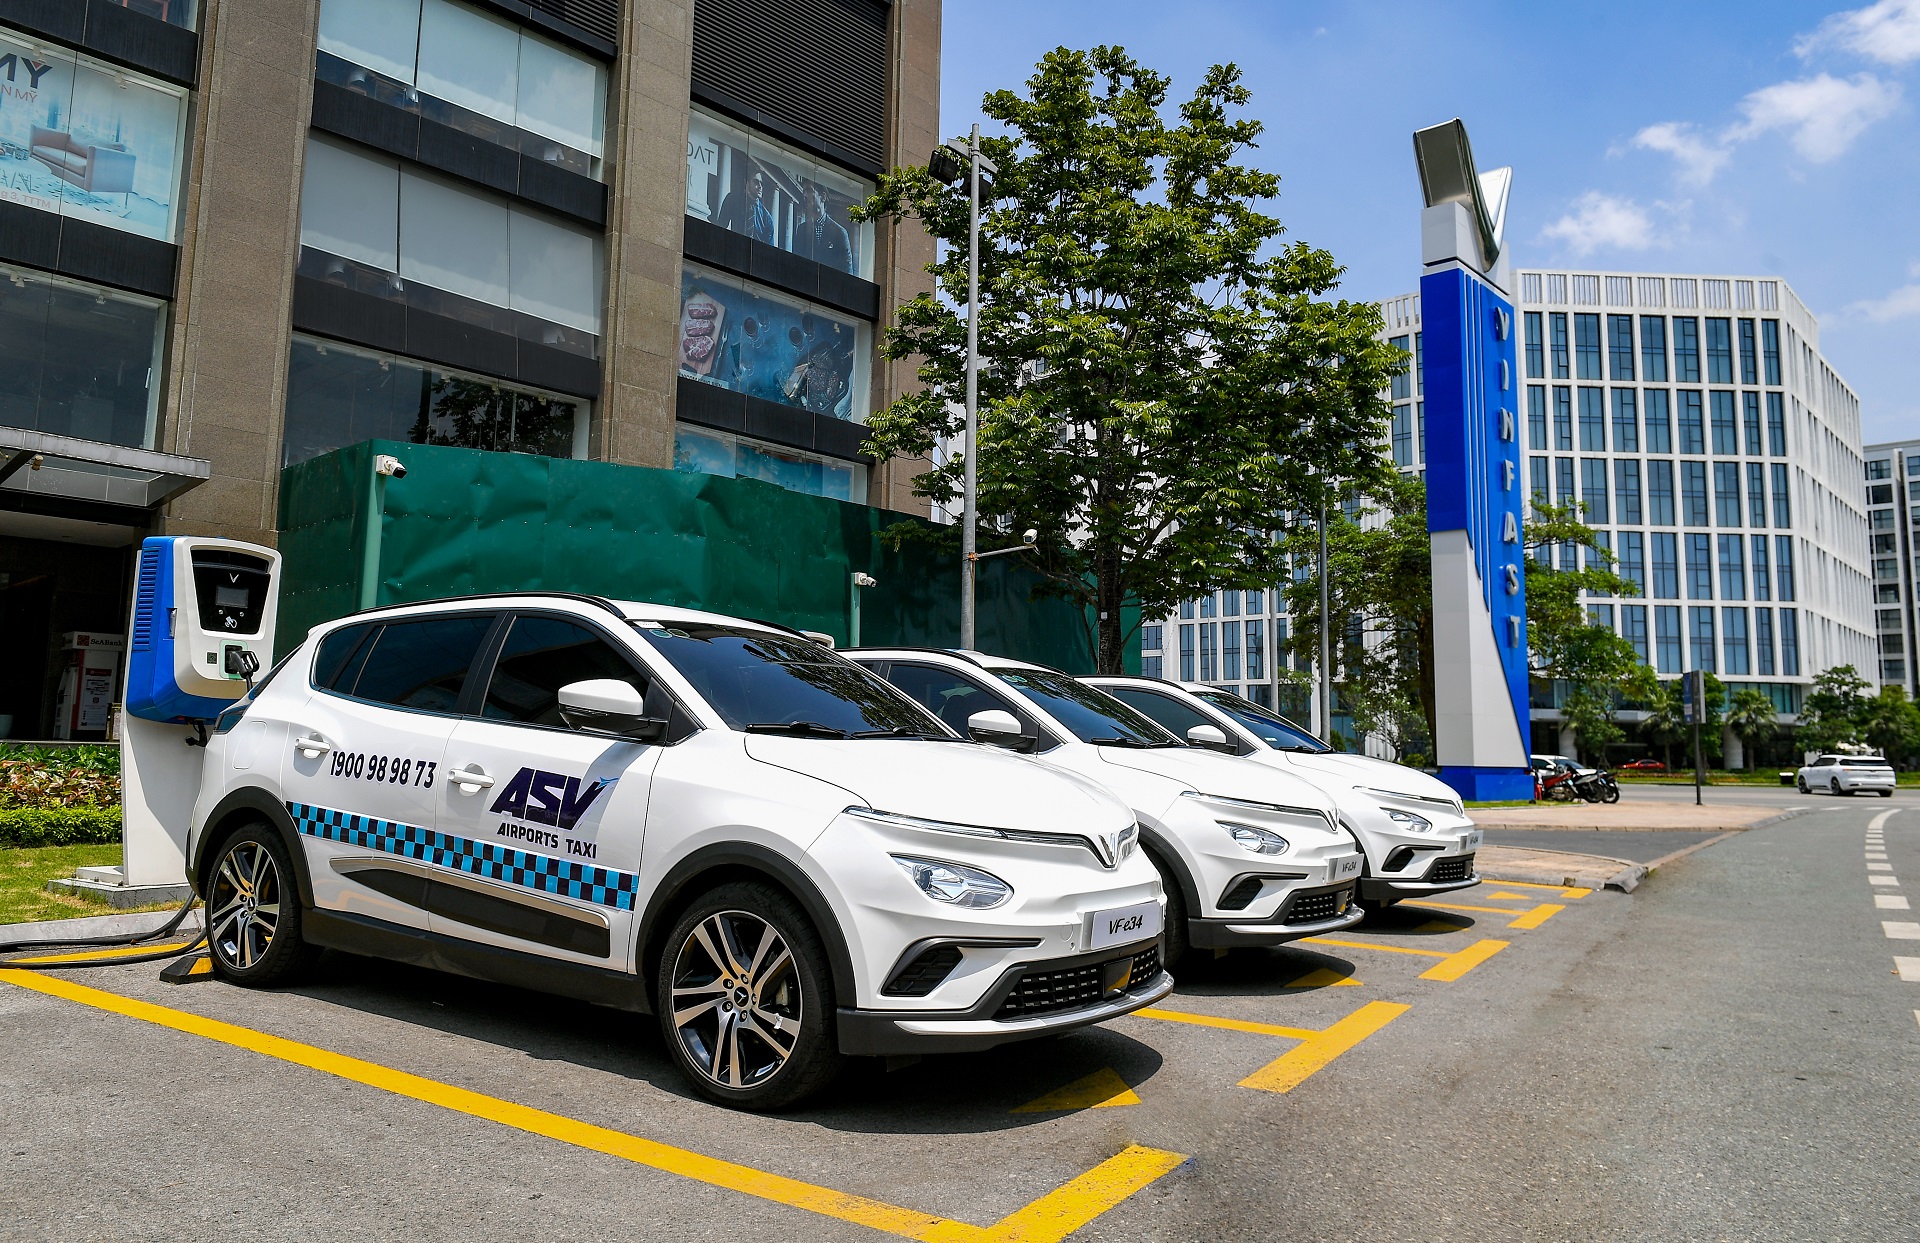 Dàn xe taxi điện mang thương hiệu ASV Airports Taxi sẽ sớm có mặt tại các sân bay lớn như Nội Bài, Tân Sơn Nhất ngay trong tháng 5/2023.